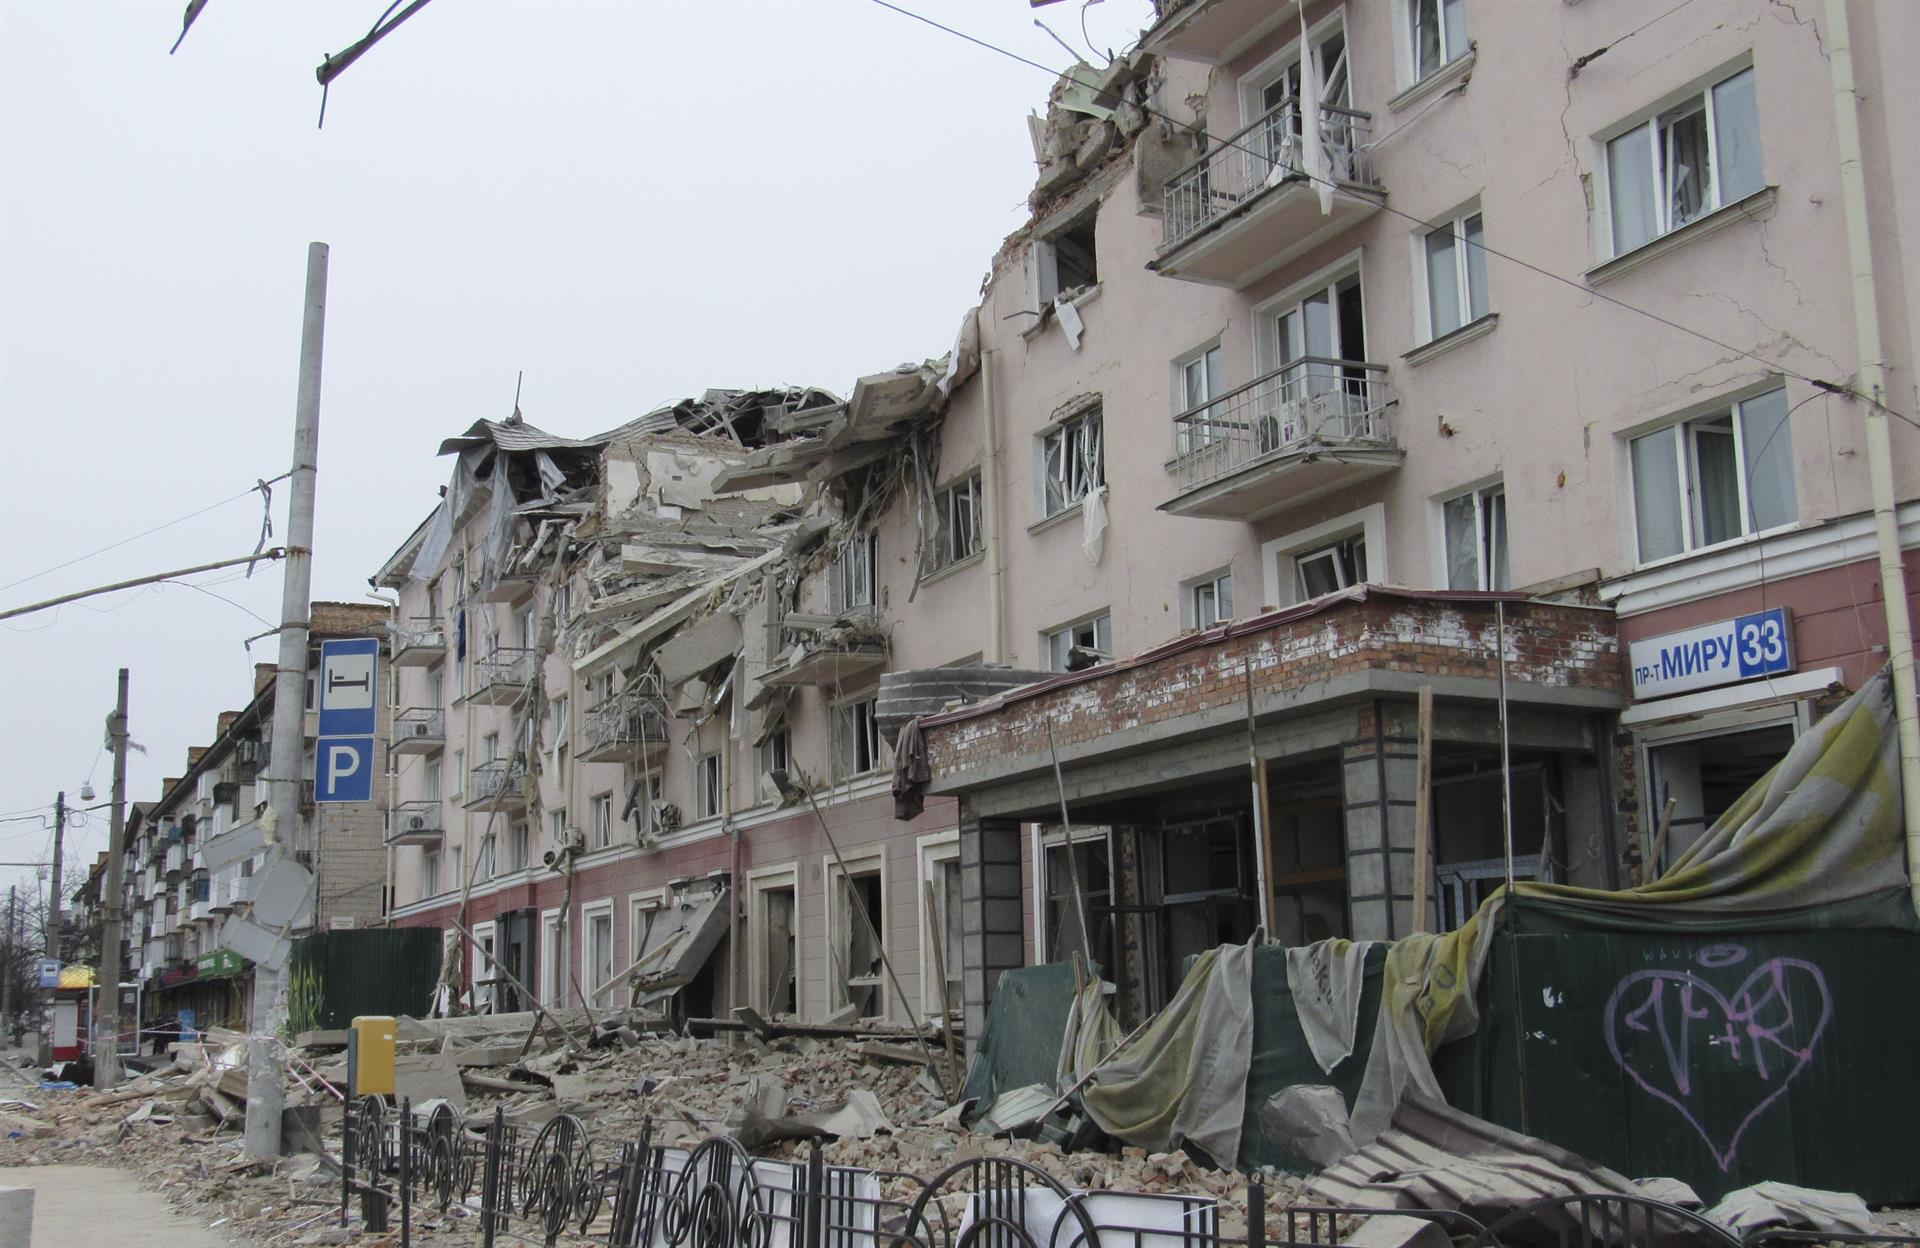 Un medio estatal chino denuncia los ataques rusos contra civiles en Ucrania